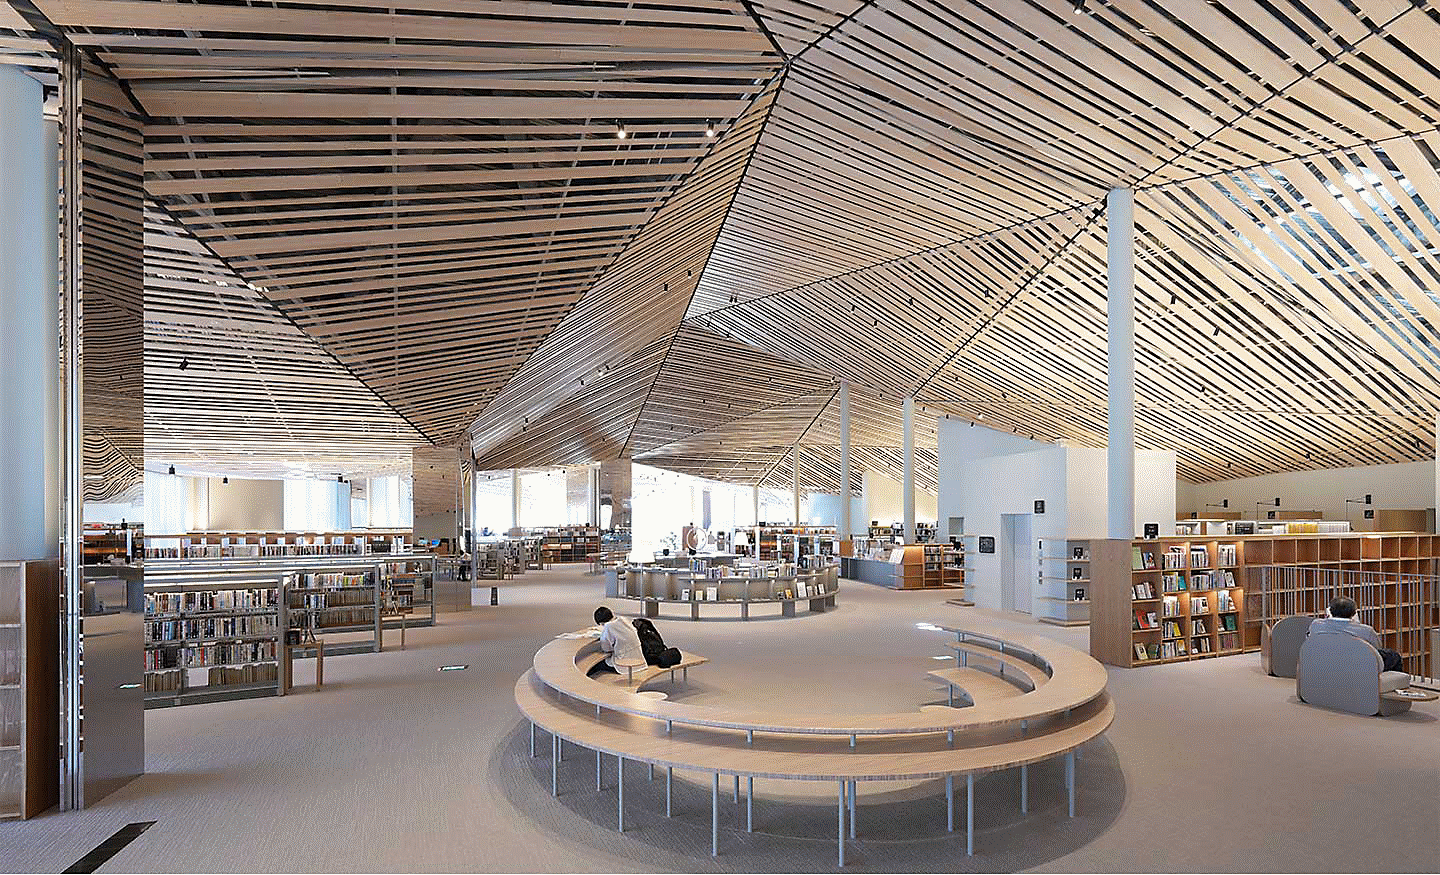 Kuva suuren kirjaston koristeellisista sisätiloista, joissa on käytetty useita suoria puulankkuja katossa; kuva on tarkka reunasta reunaan